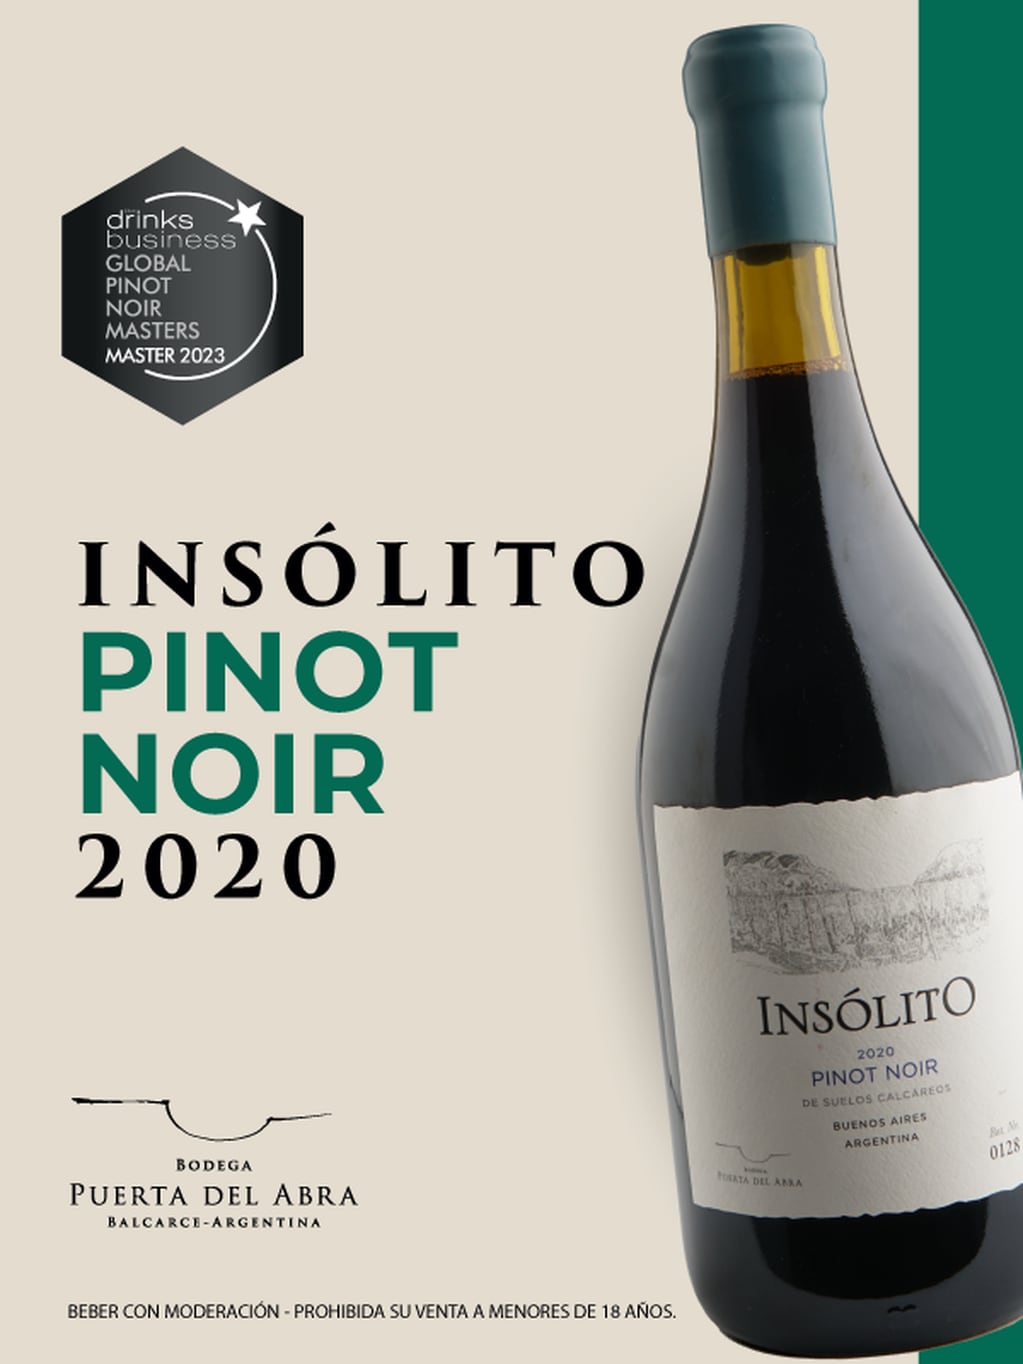 Insólito Pinot Noir 2020 de Bodega Puerta del Abra. - Gentileza